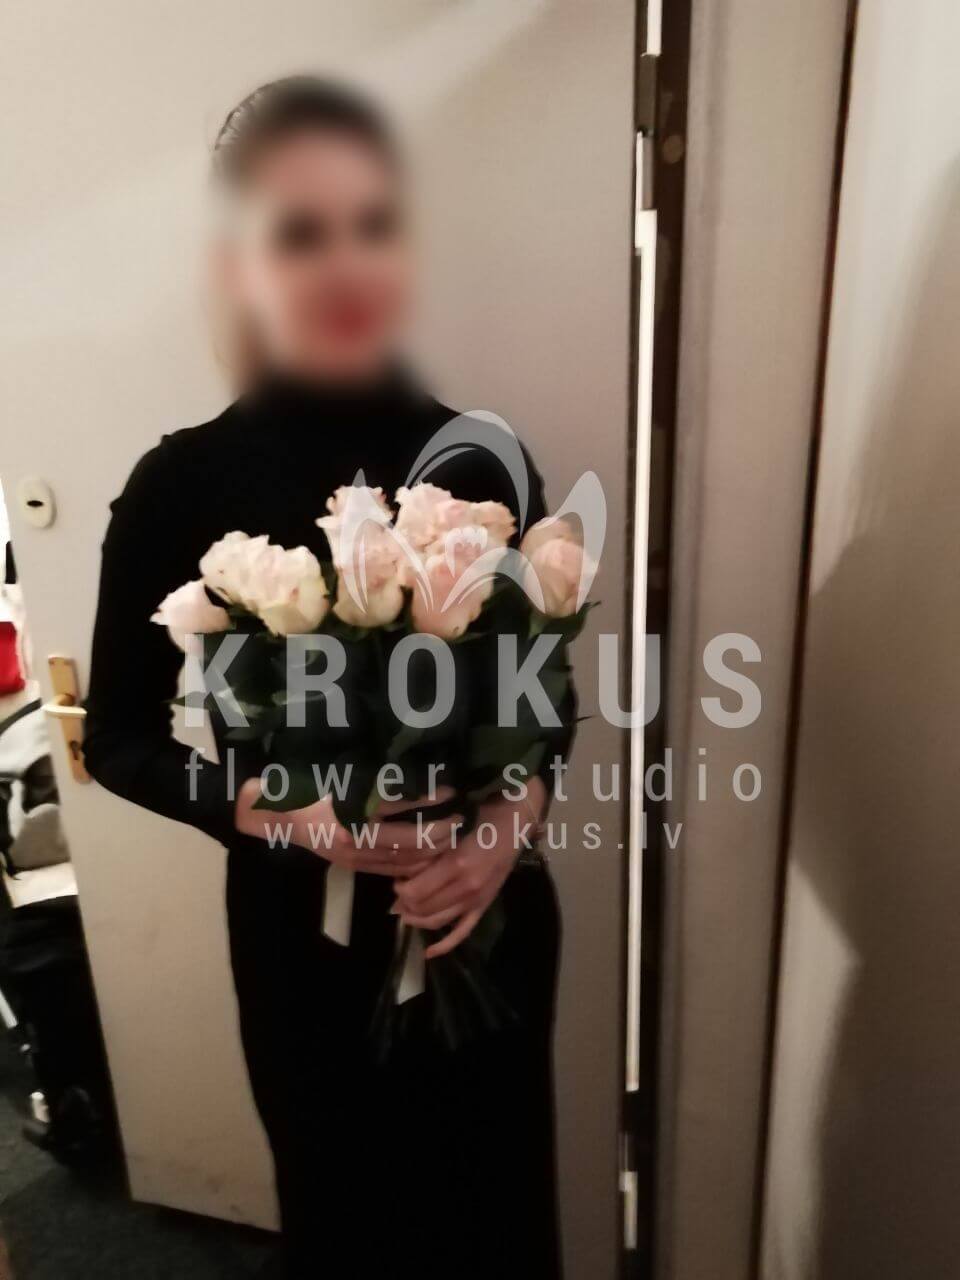 Доставка цветов в город Рига (белые розыкремовые розы)